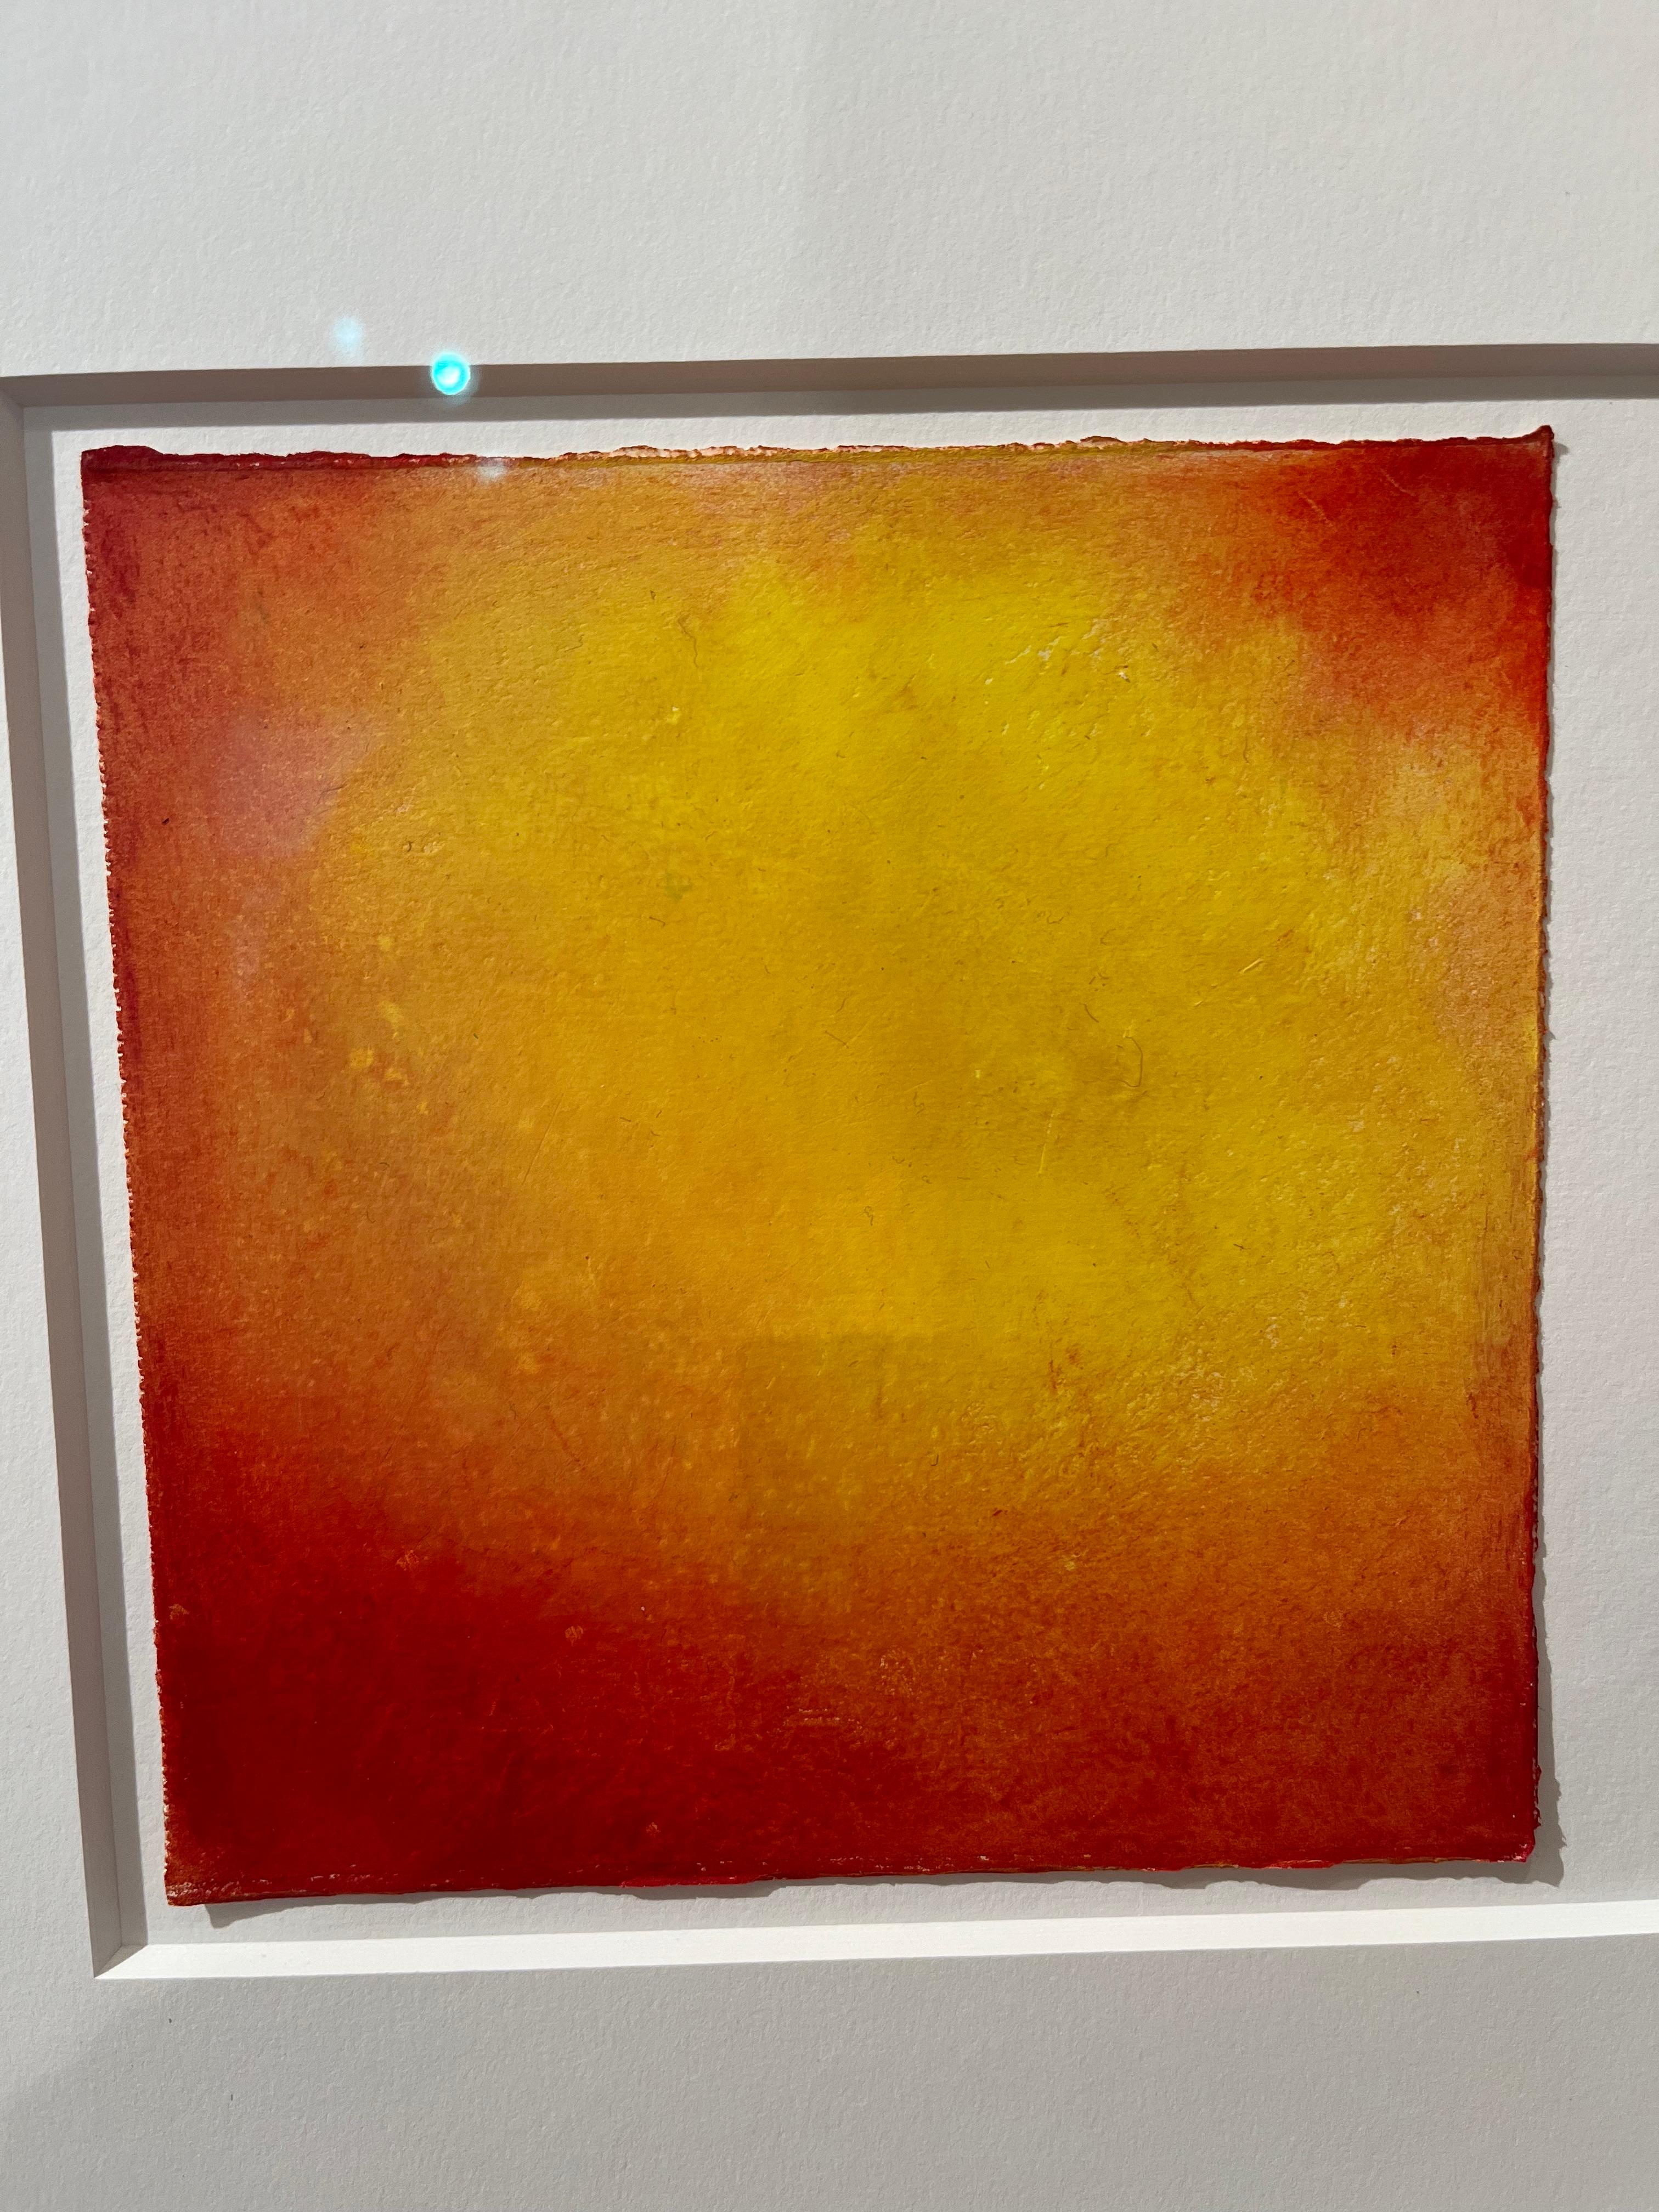 Or Crimson, pastel à l'huile et bâton à l'huile sur papier, portrait abstrait de fruits au pastel - Painting de Daisy Craddock